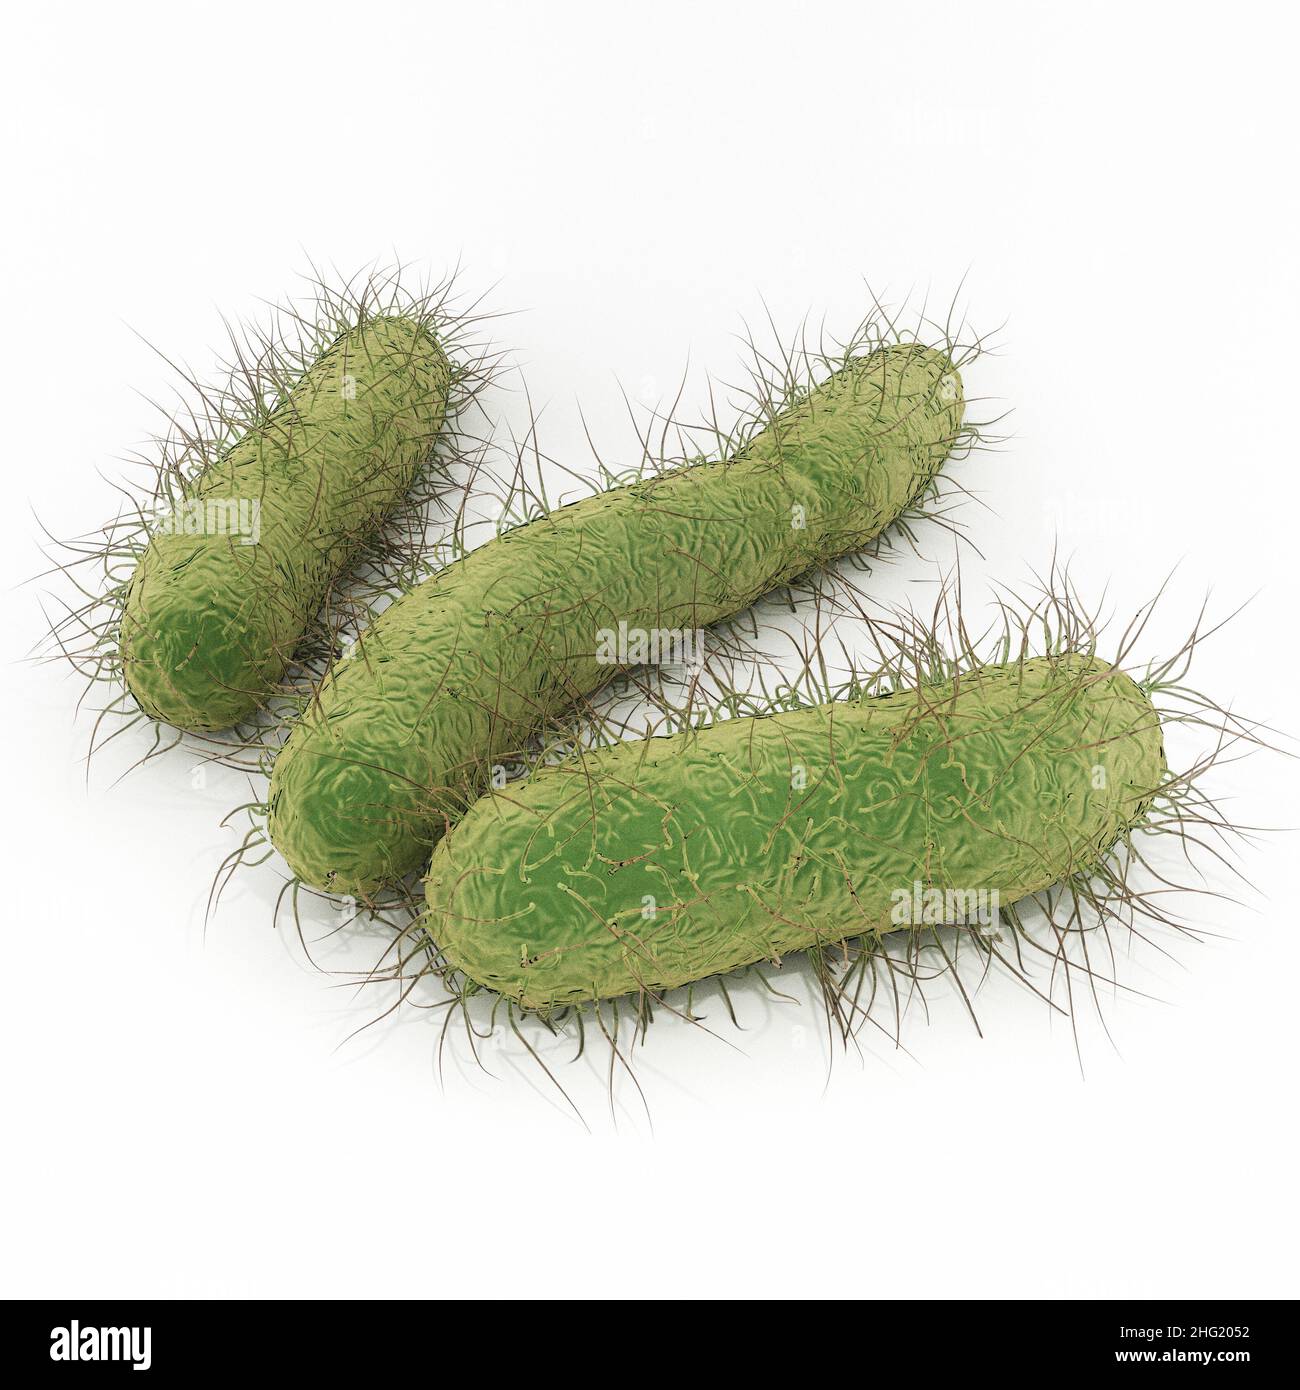 Bactérie E. coli - une illustration d'Escherichia coli est une bactérie en forme de tige du genre Escherichia qui peut causer un empoisonnement alimentaire grave. Banque D'Images